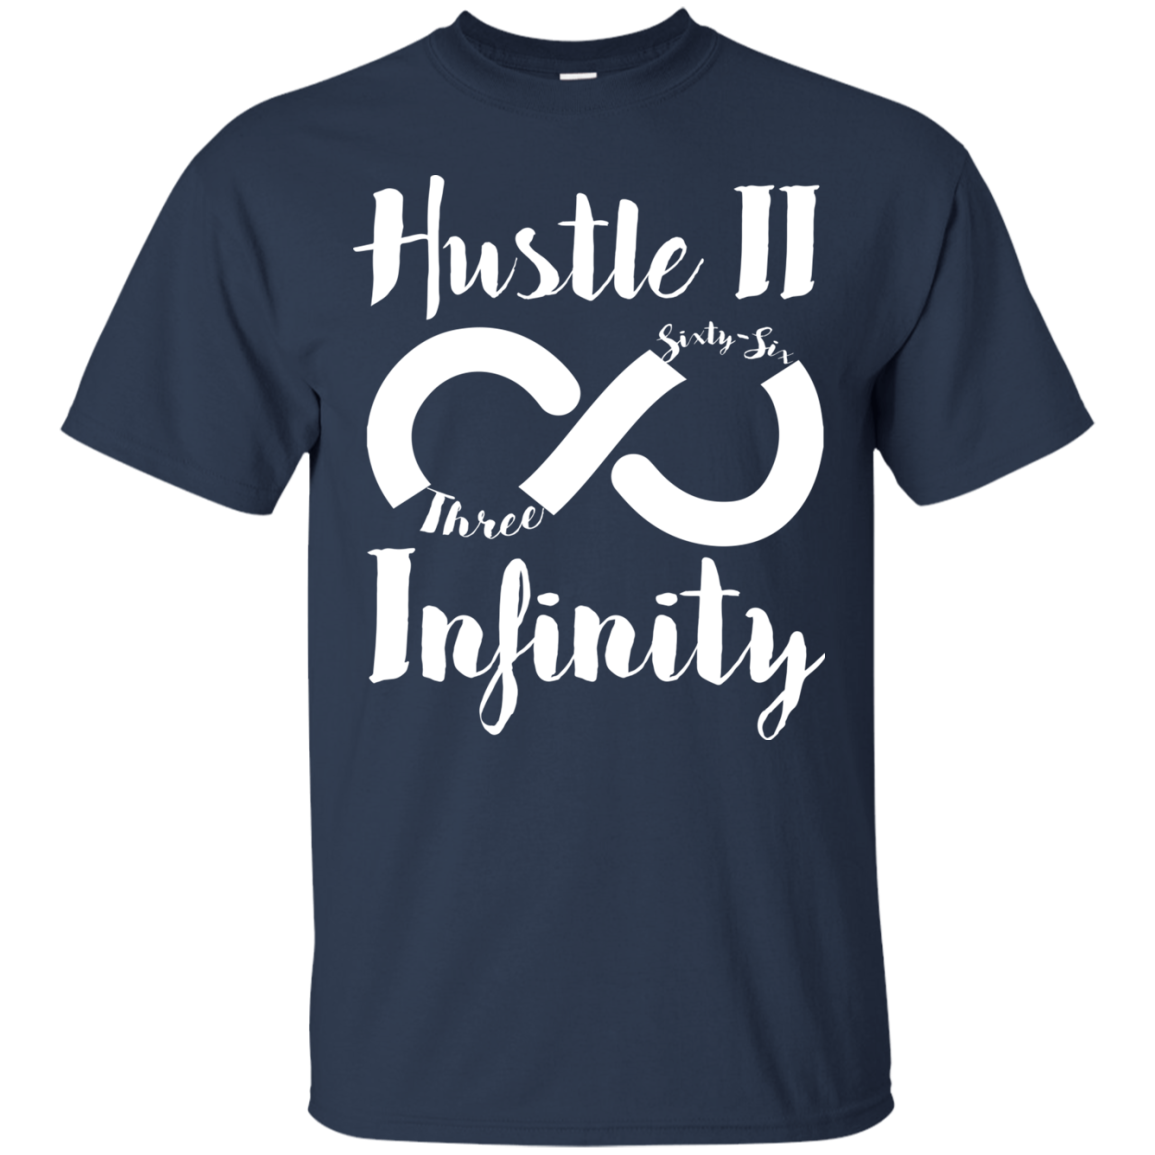 Hustle II Infinity